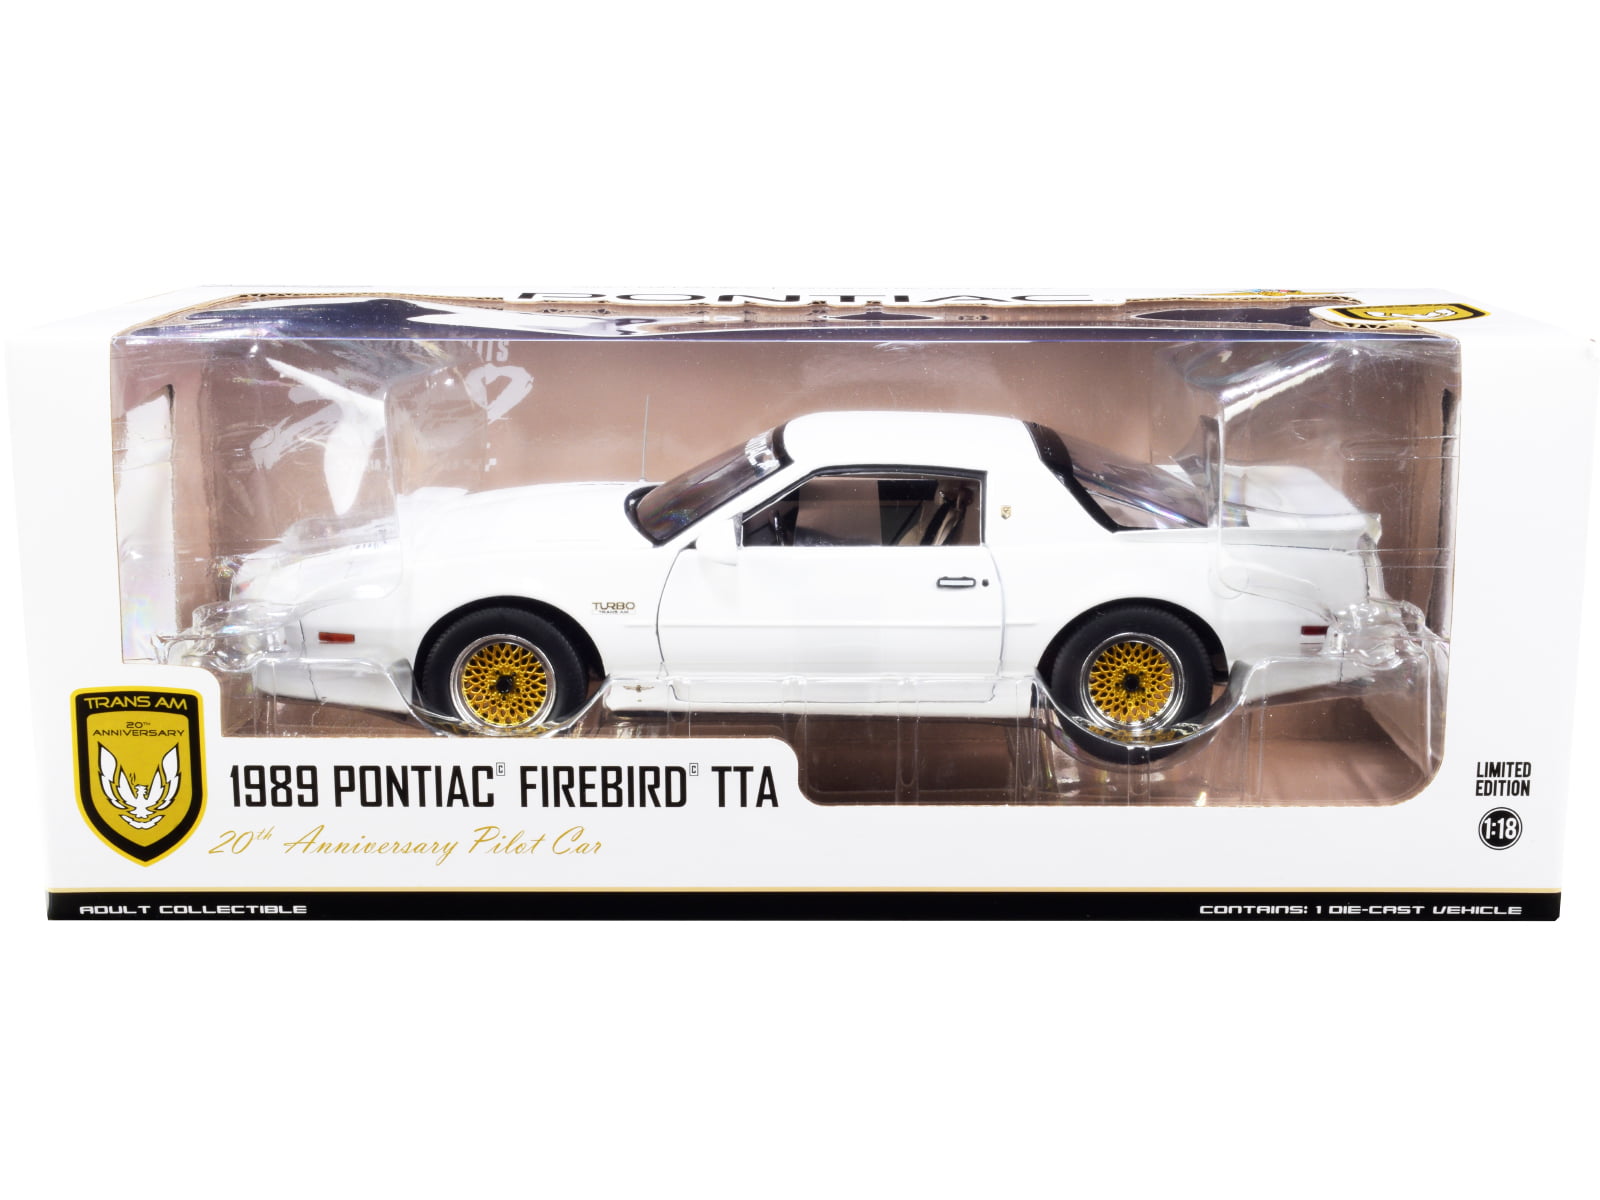 AMT Model Kit 1/25 20th Anniversary Turbo Firebird GTA 